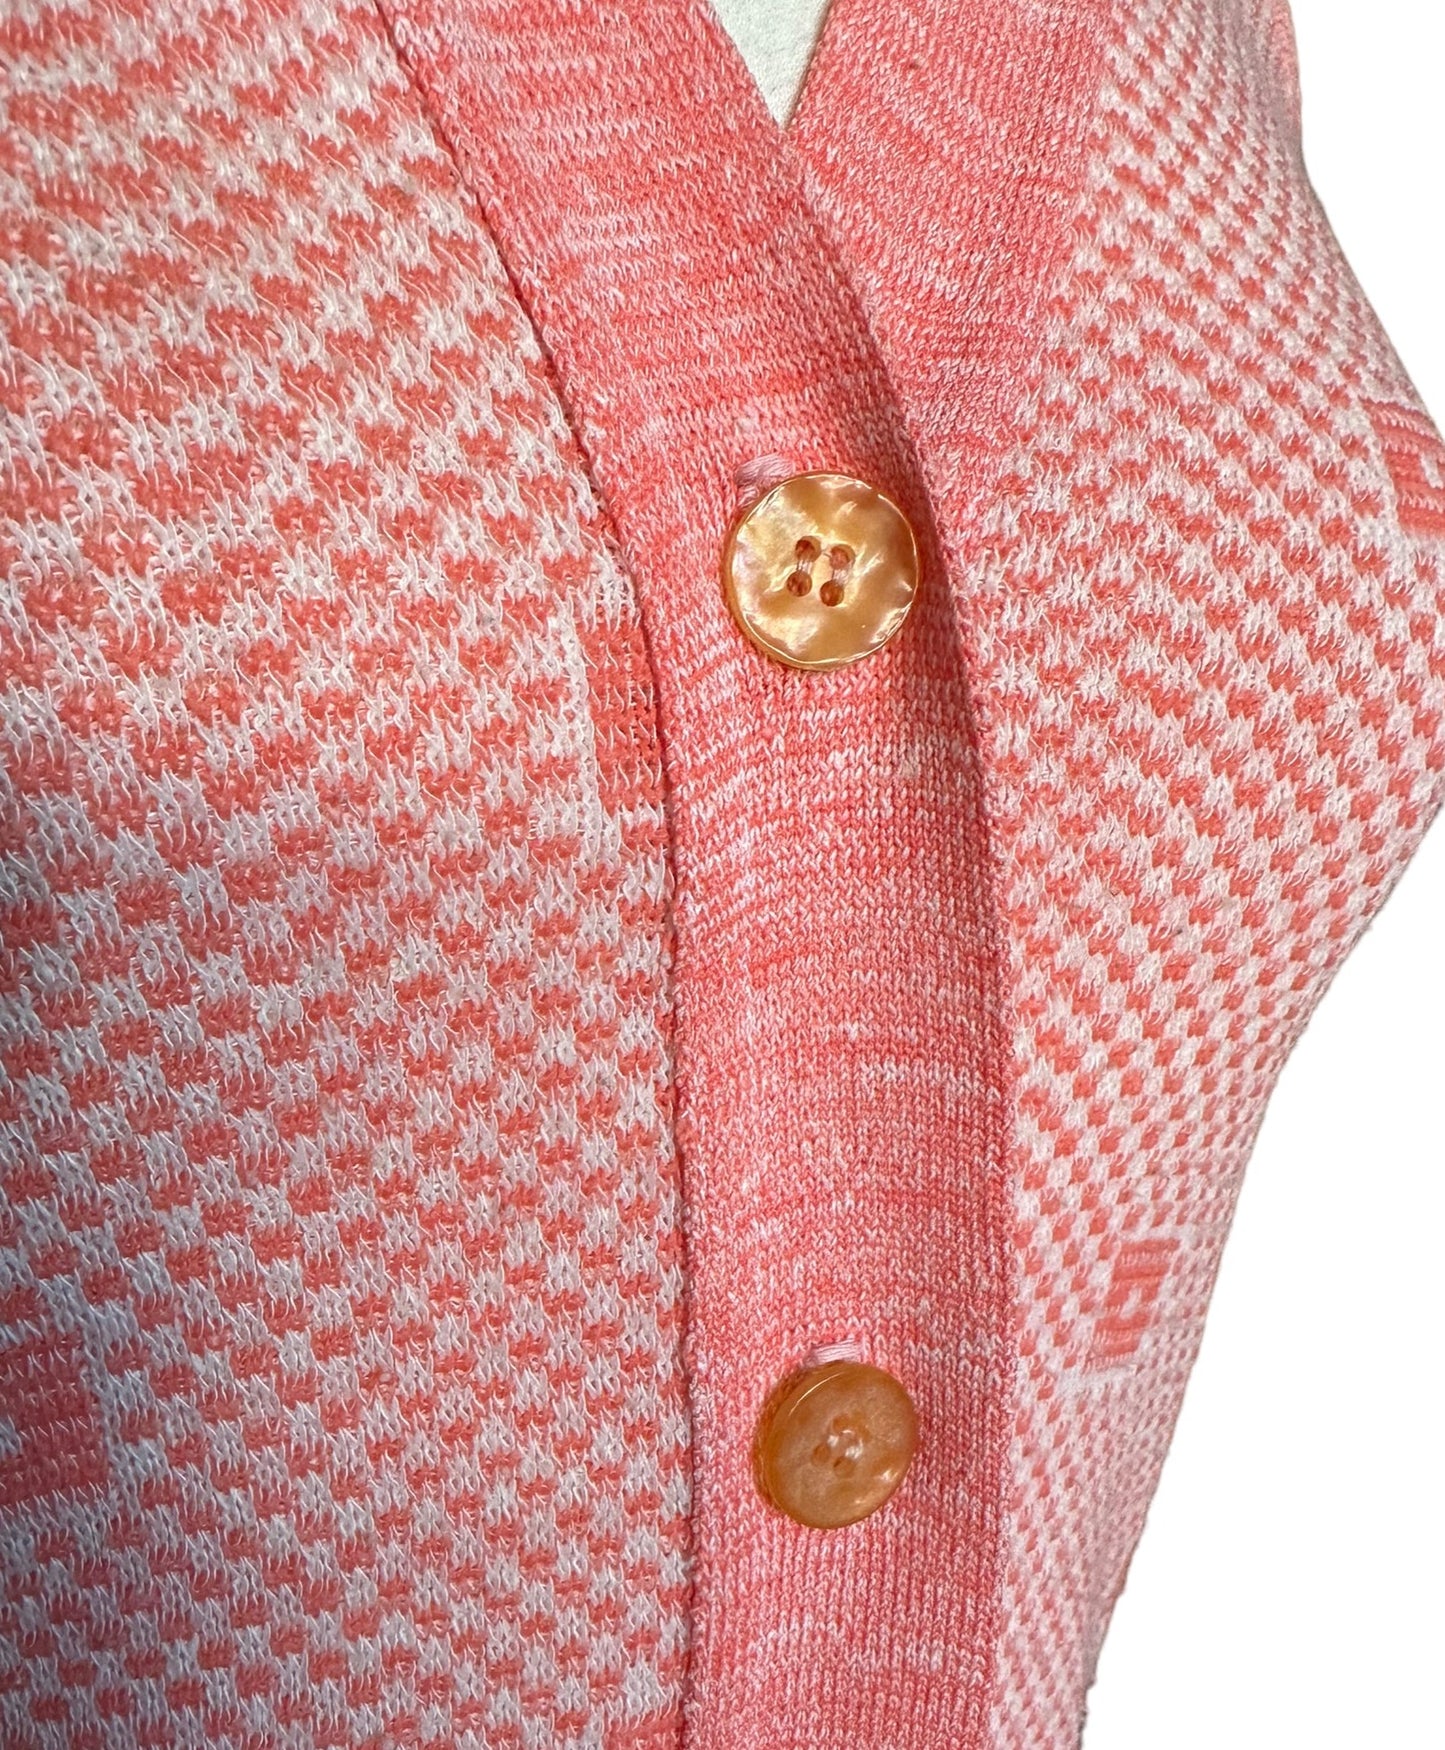 Button close up Vintage 1960s Paris Star Knit Vest | Ladies Vintage Seattle | Barn Owl True Vintage